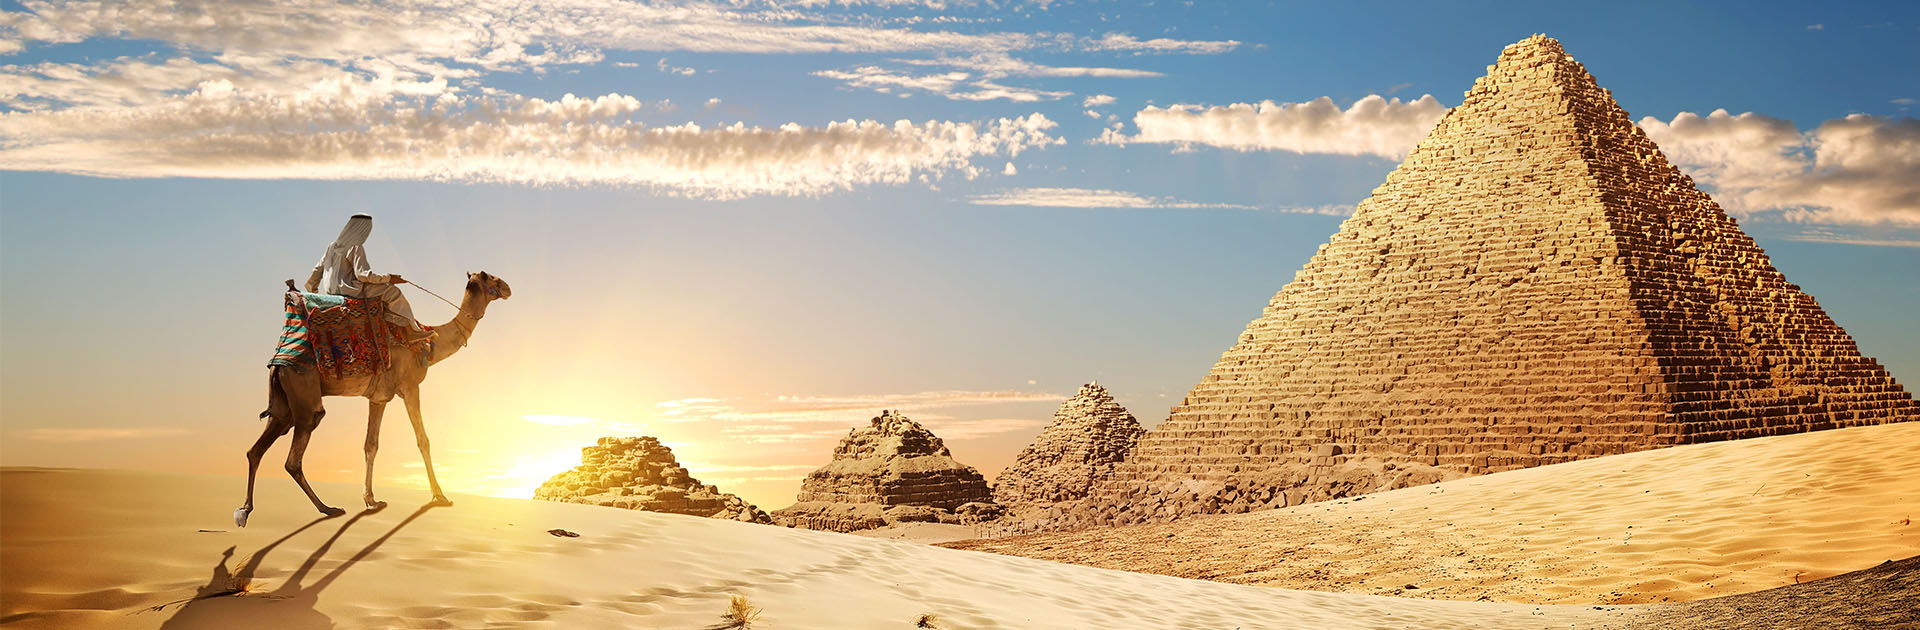 AmaWaterways’ Secrets of Egypt & The Nile